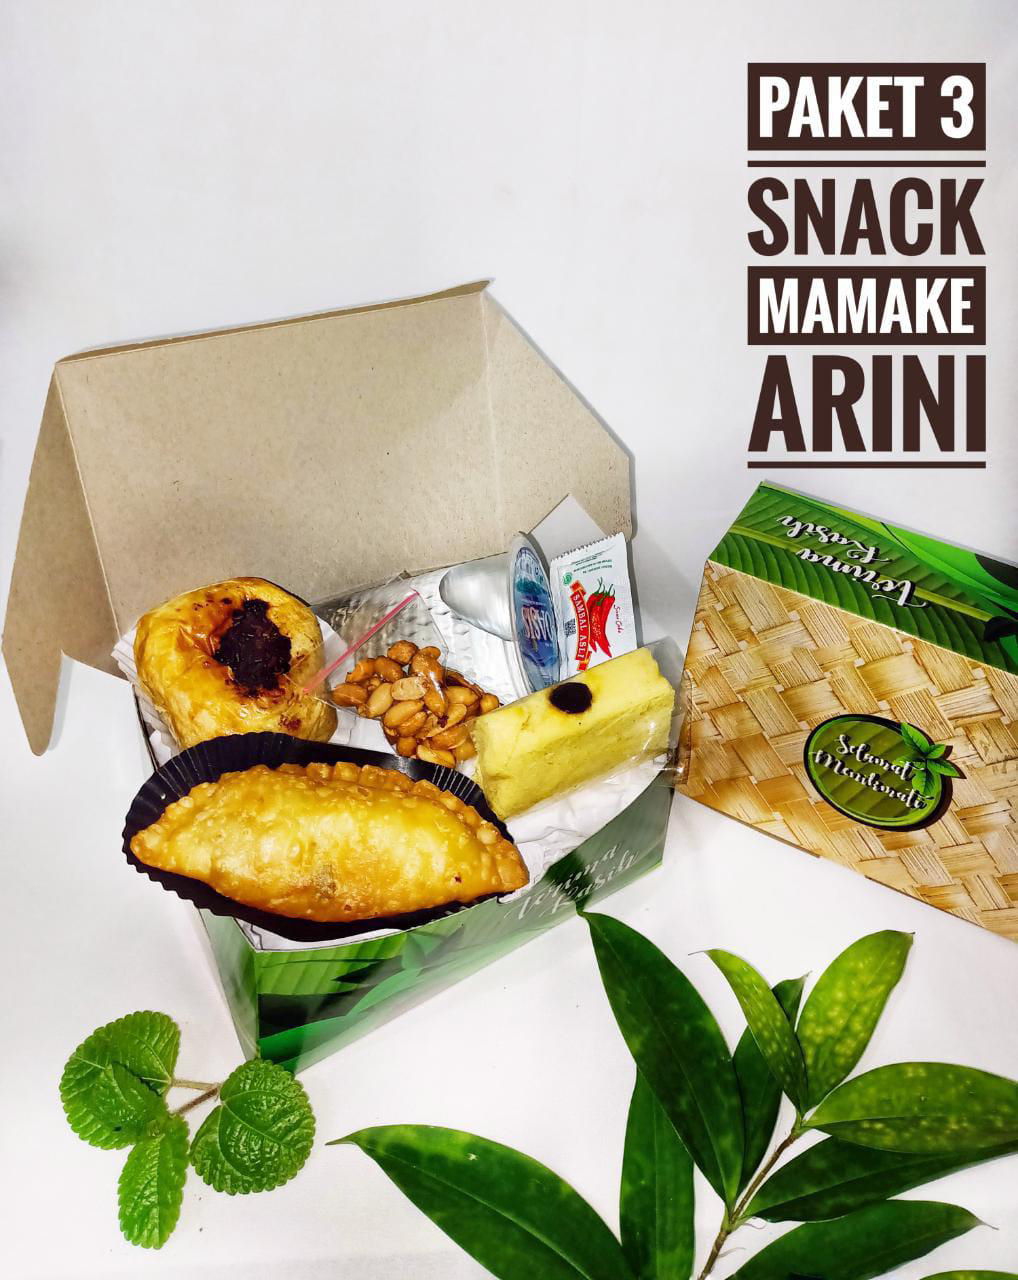 (PAKET 3) Snack Box Mamake Arini 1